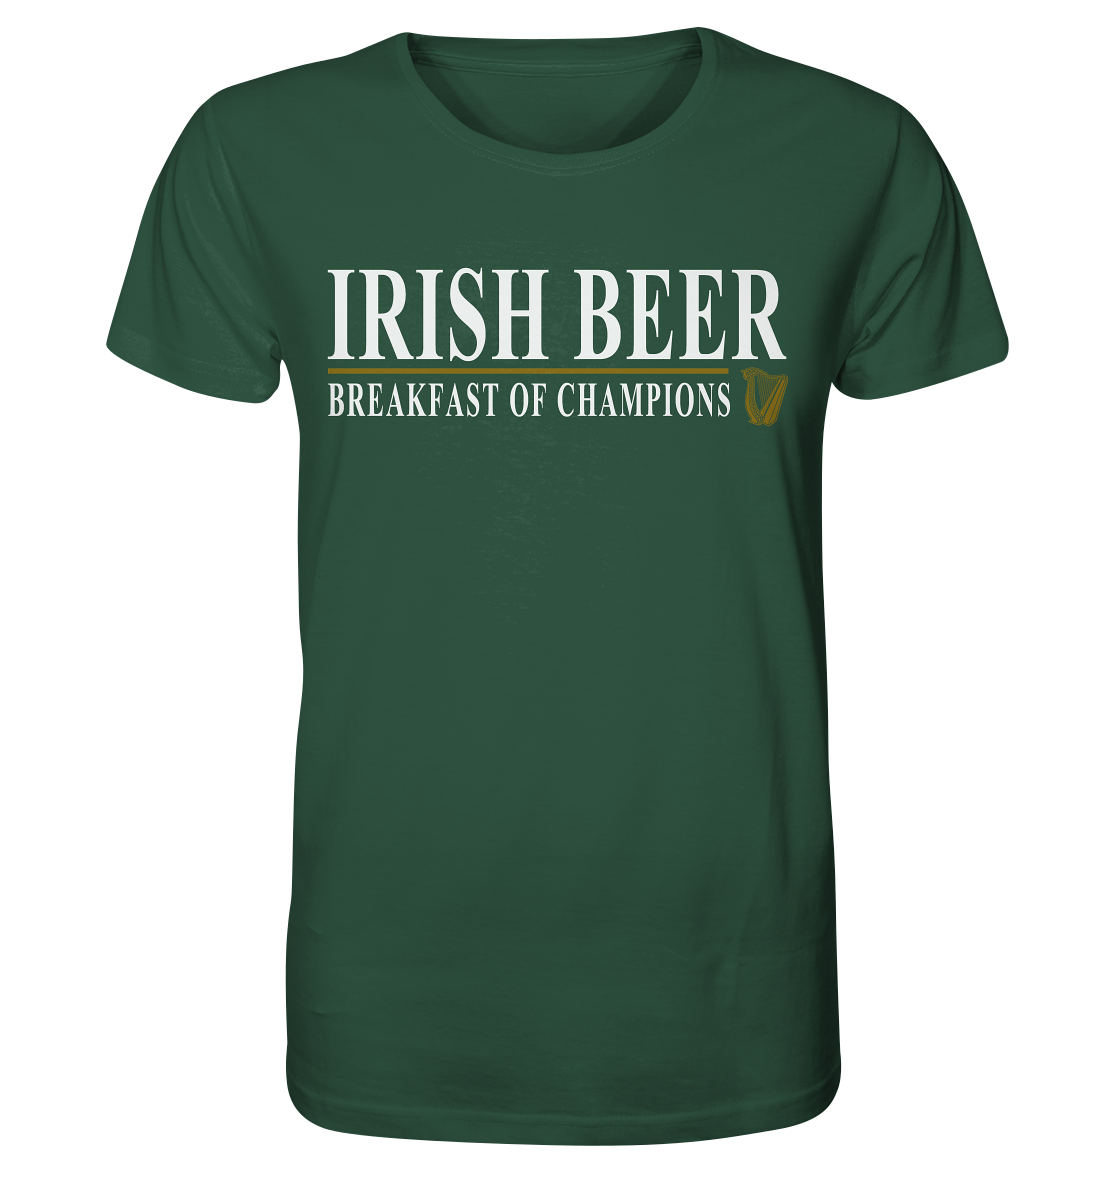 Irish Beer "Breakfast Of Champions" - Organic Shirt